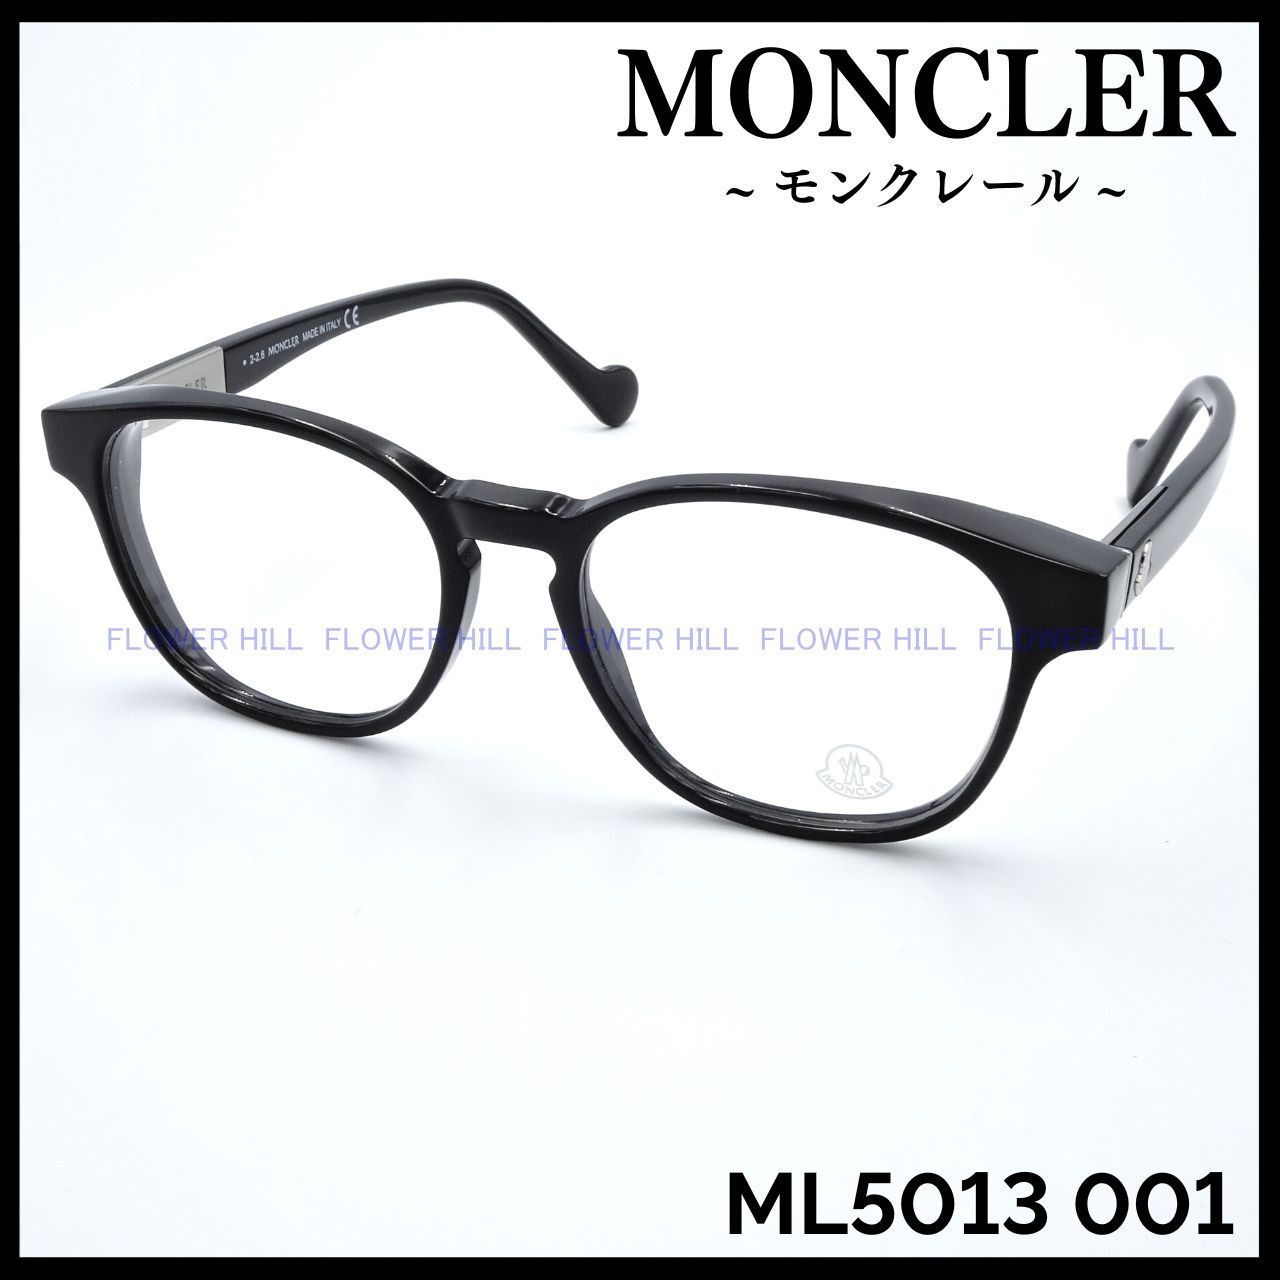 MONCLER モンクレール ML5013 001 メガネ イタリア製 ブラック 